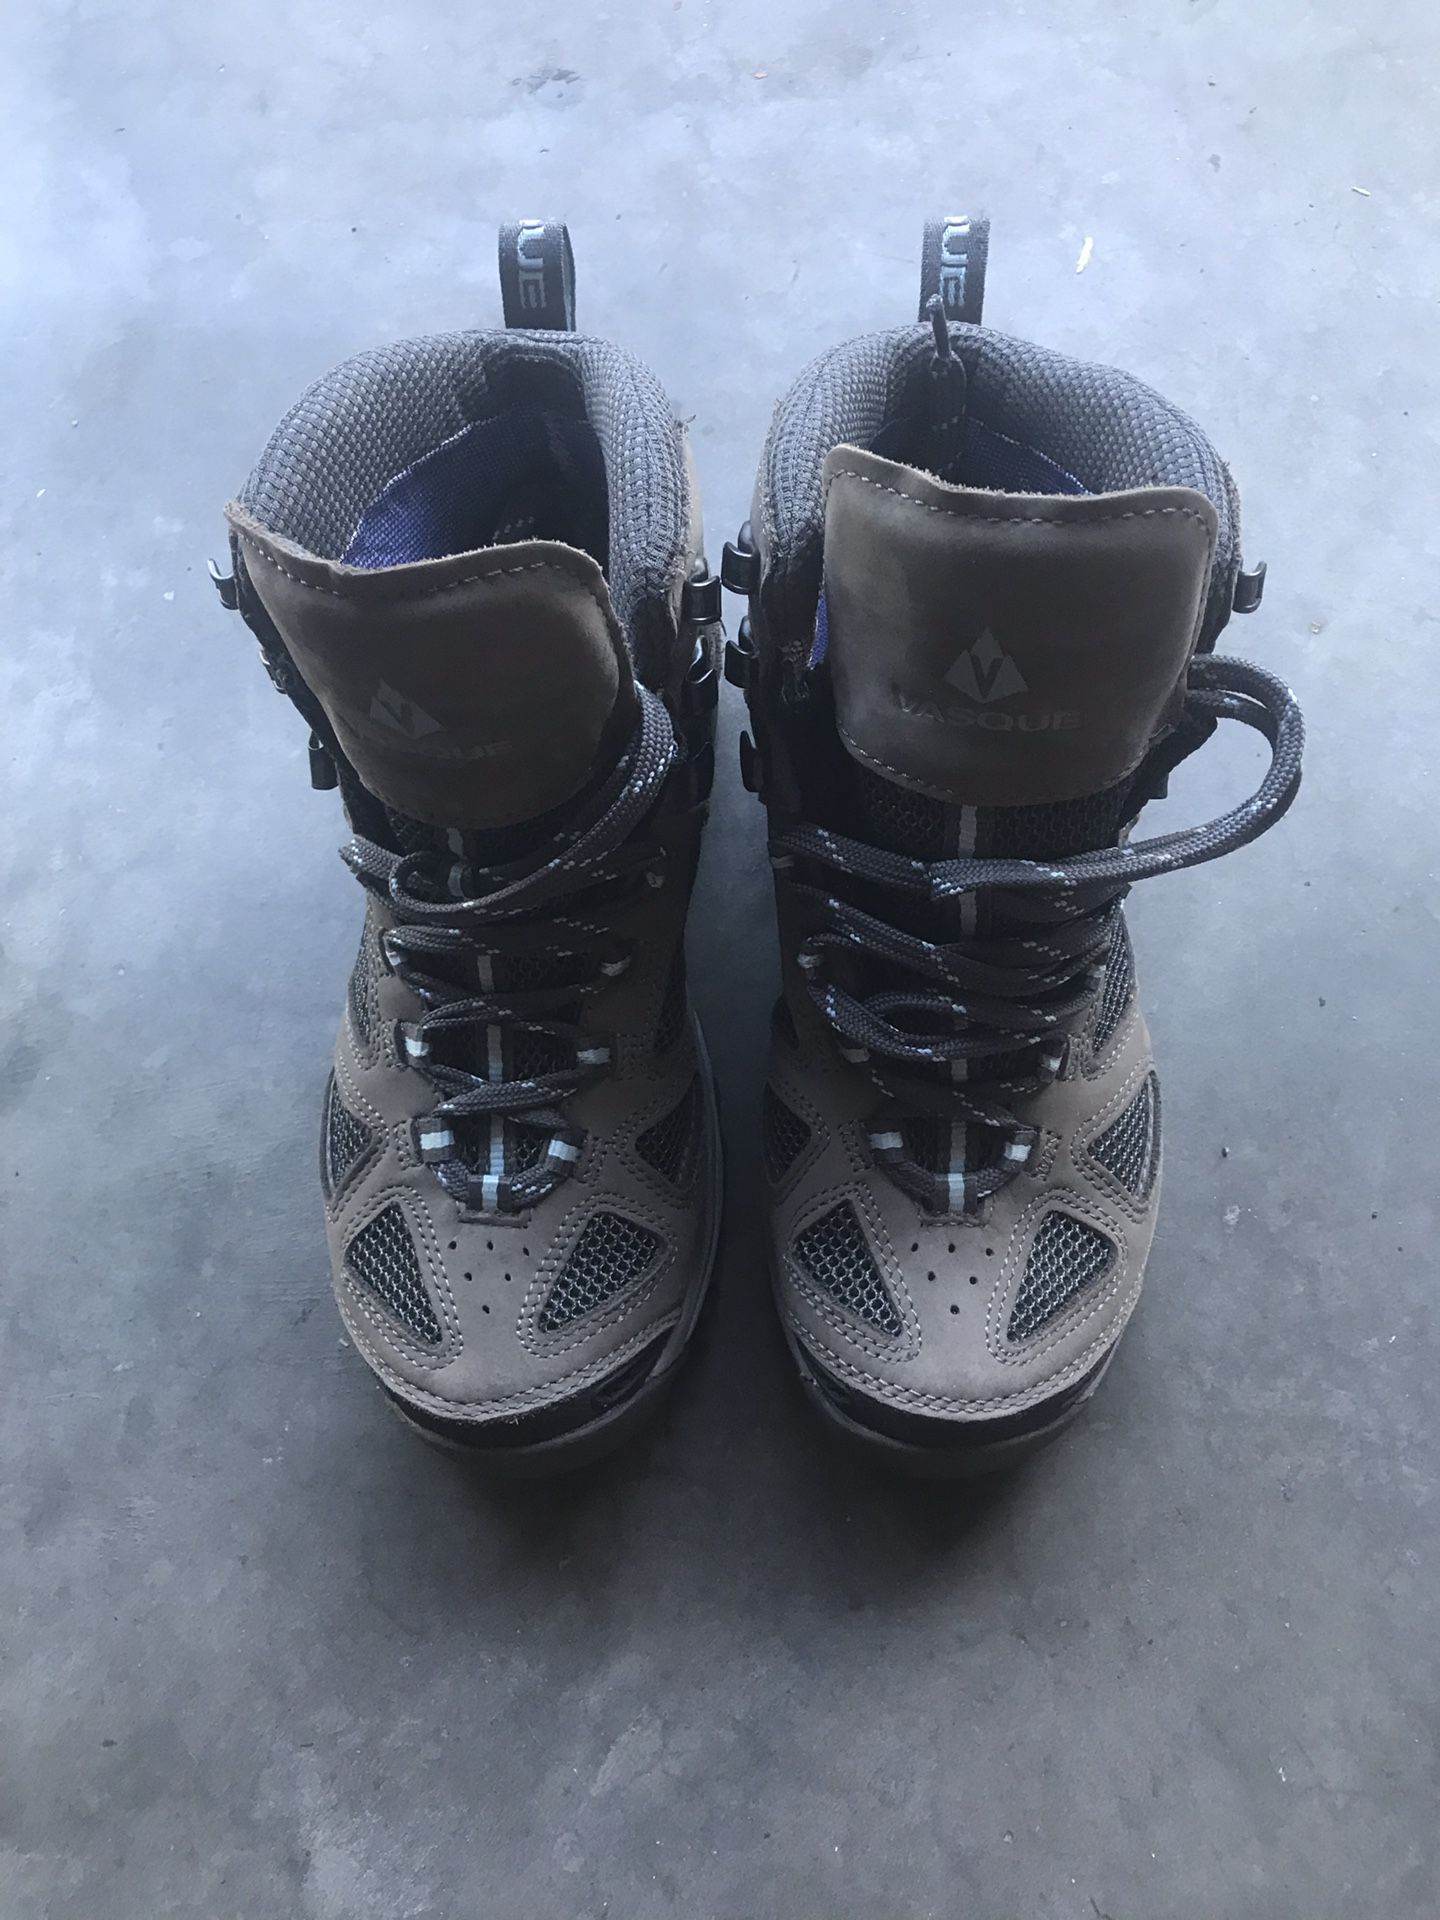 Vasque Breeze GRX women’s hiking boots